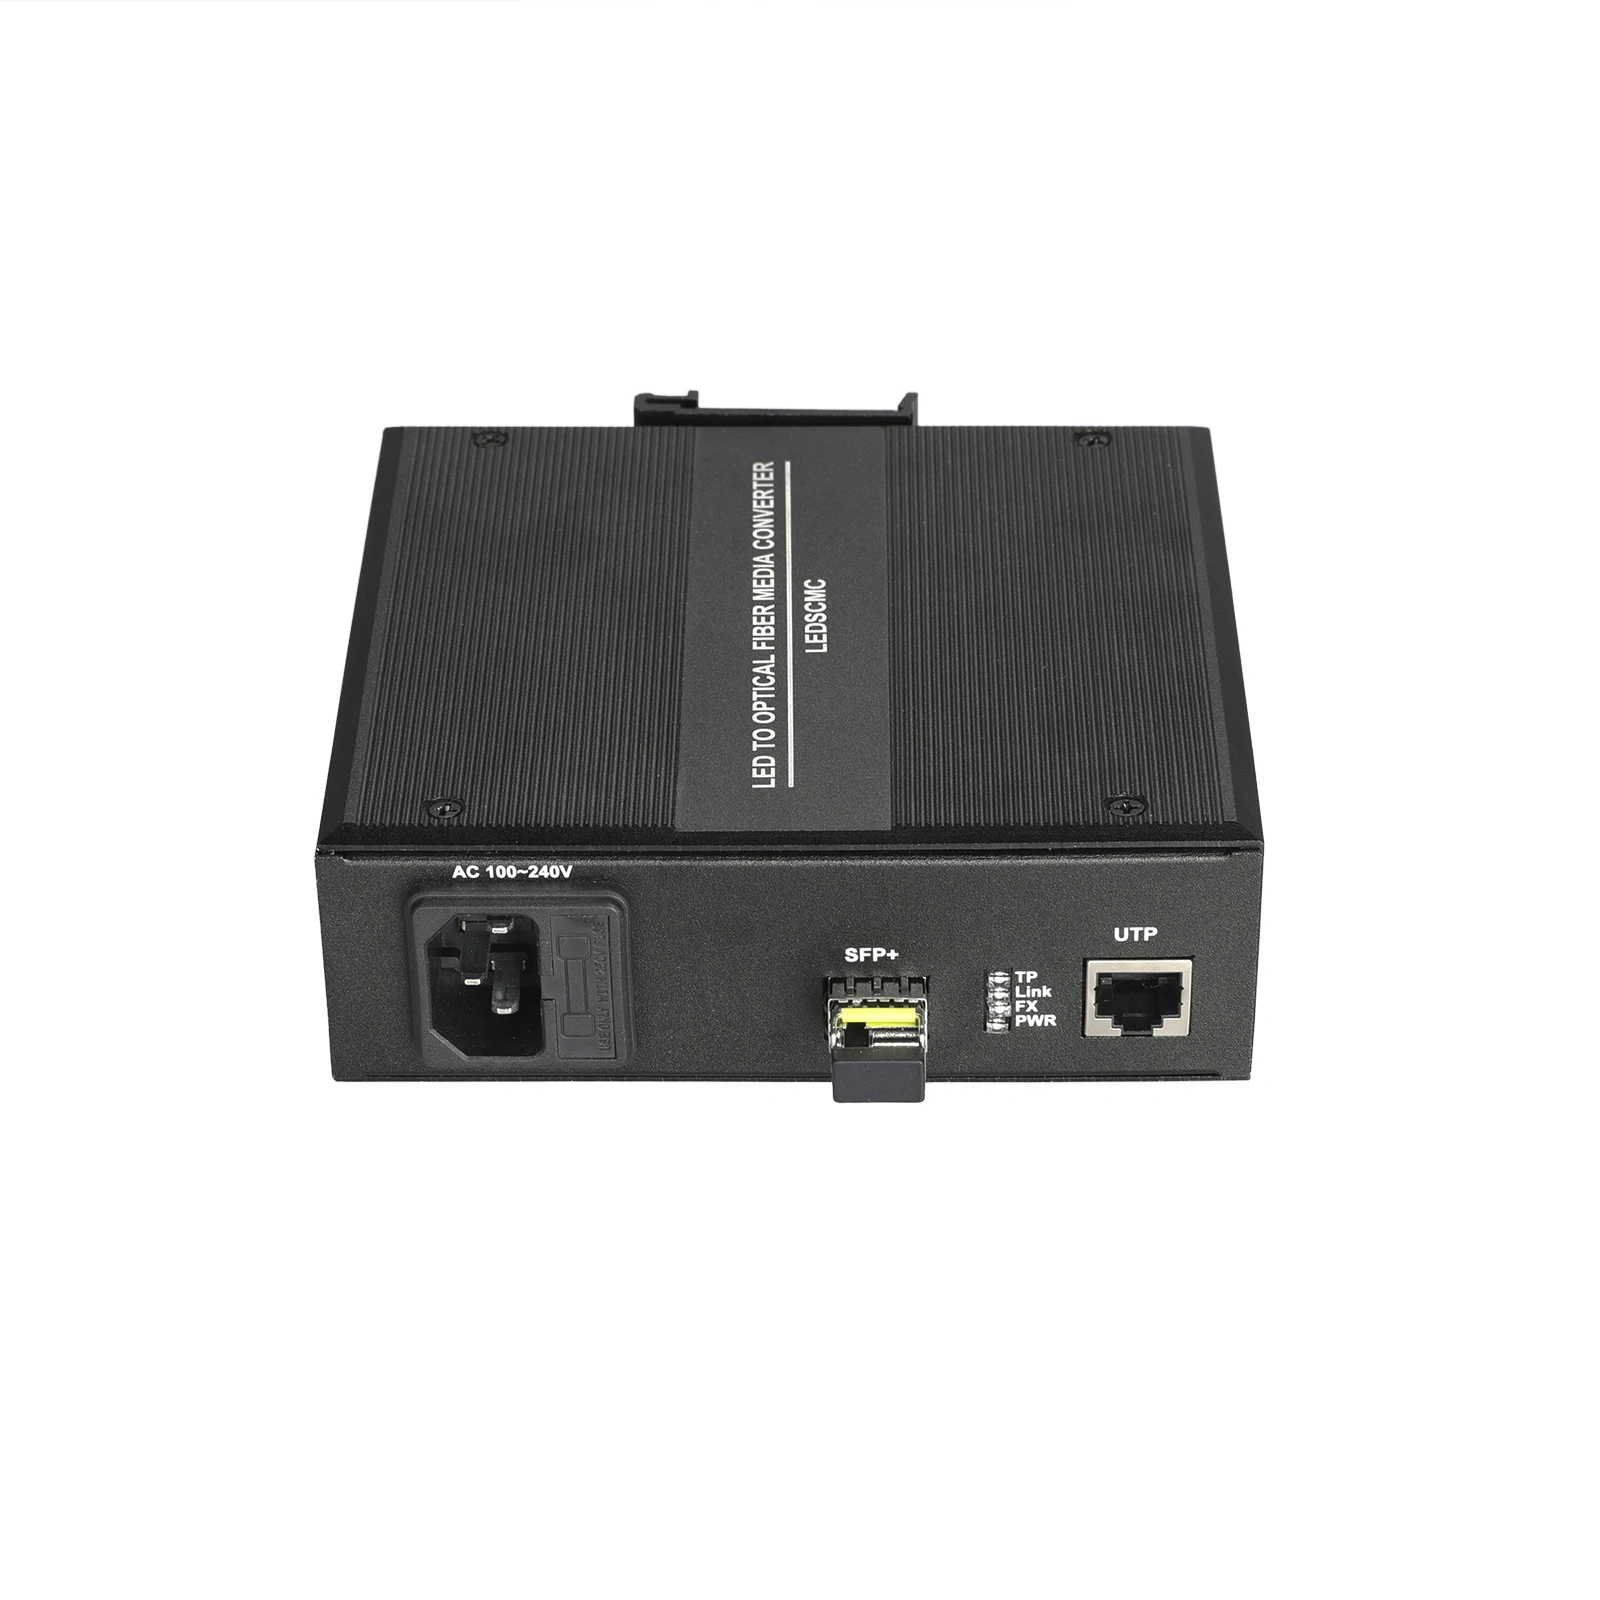 

Двухволоконный одномодовый коннектор Gigabit Ethernet 20Km SC, стандартная система управления, волоконный медиа-конвертер